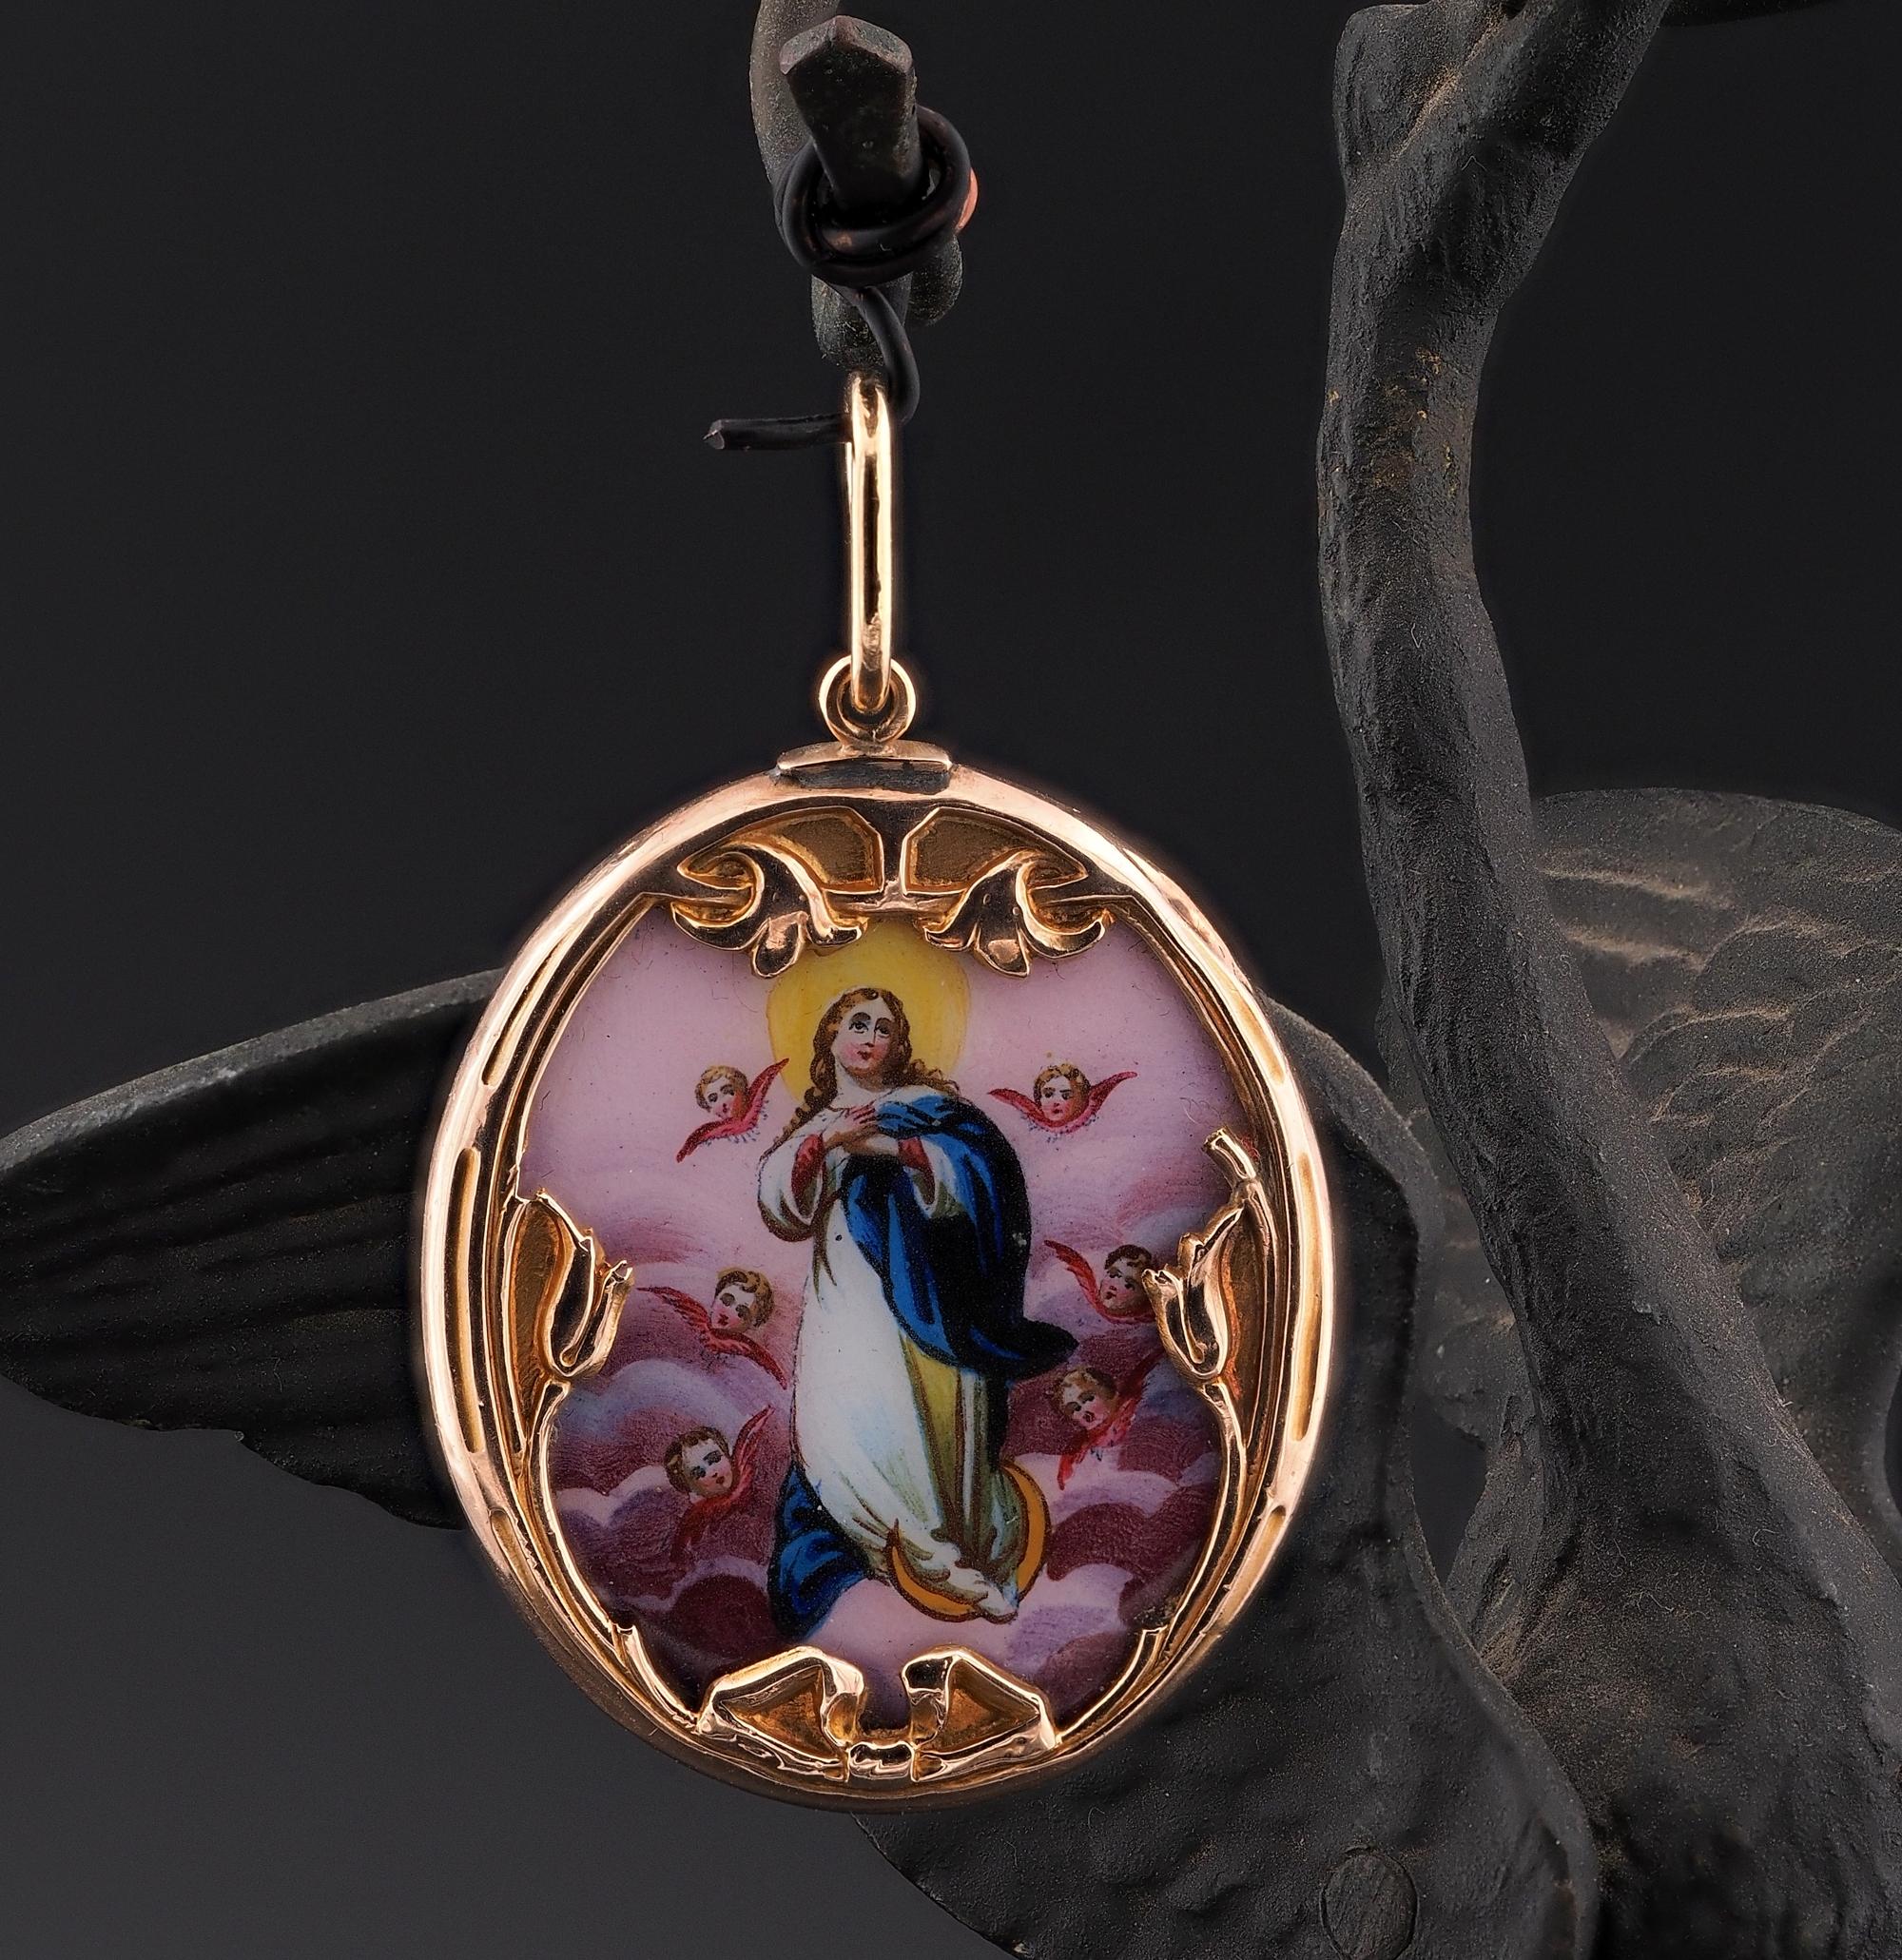 Ce magnifique pendentif religieux est daté de 1890 ca
Pièce rare de la période Art Nouveau, présentant une décoration caractéristique de l'époque, elle a été fabriquée à la main en or massif 18 KT, l'origine austro-hongroise étant indiquée sur l'âge